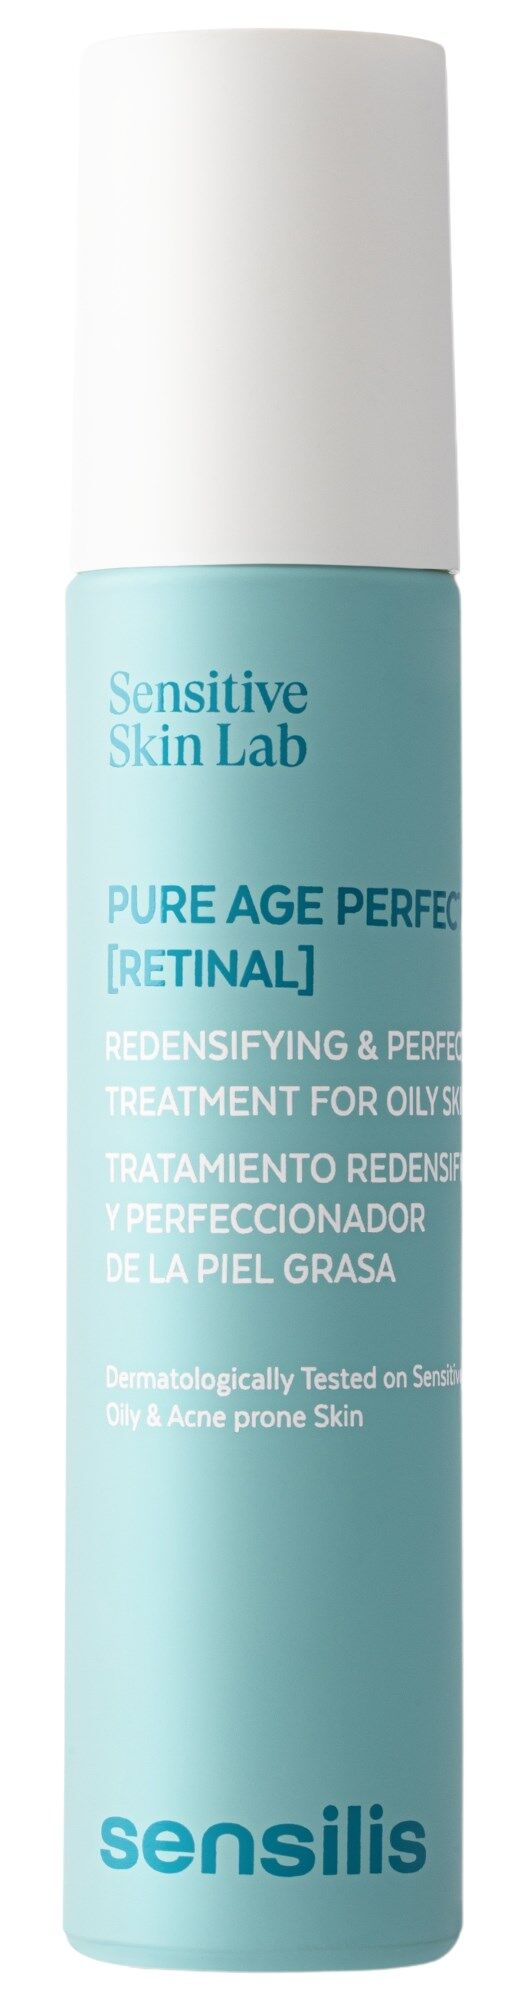 Sensilis Pure Age Perfection [Retina] Tratamiento redensificador y perfeccionador 50mL